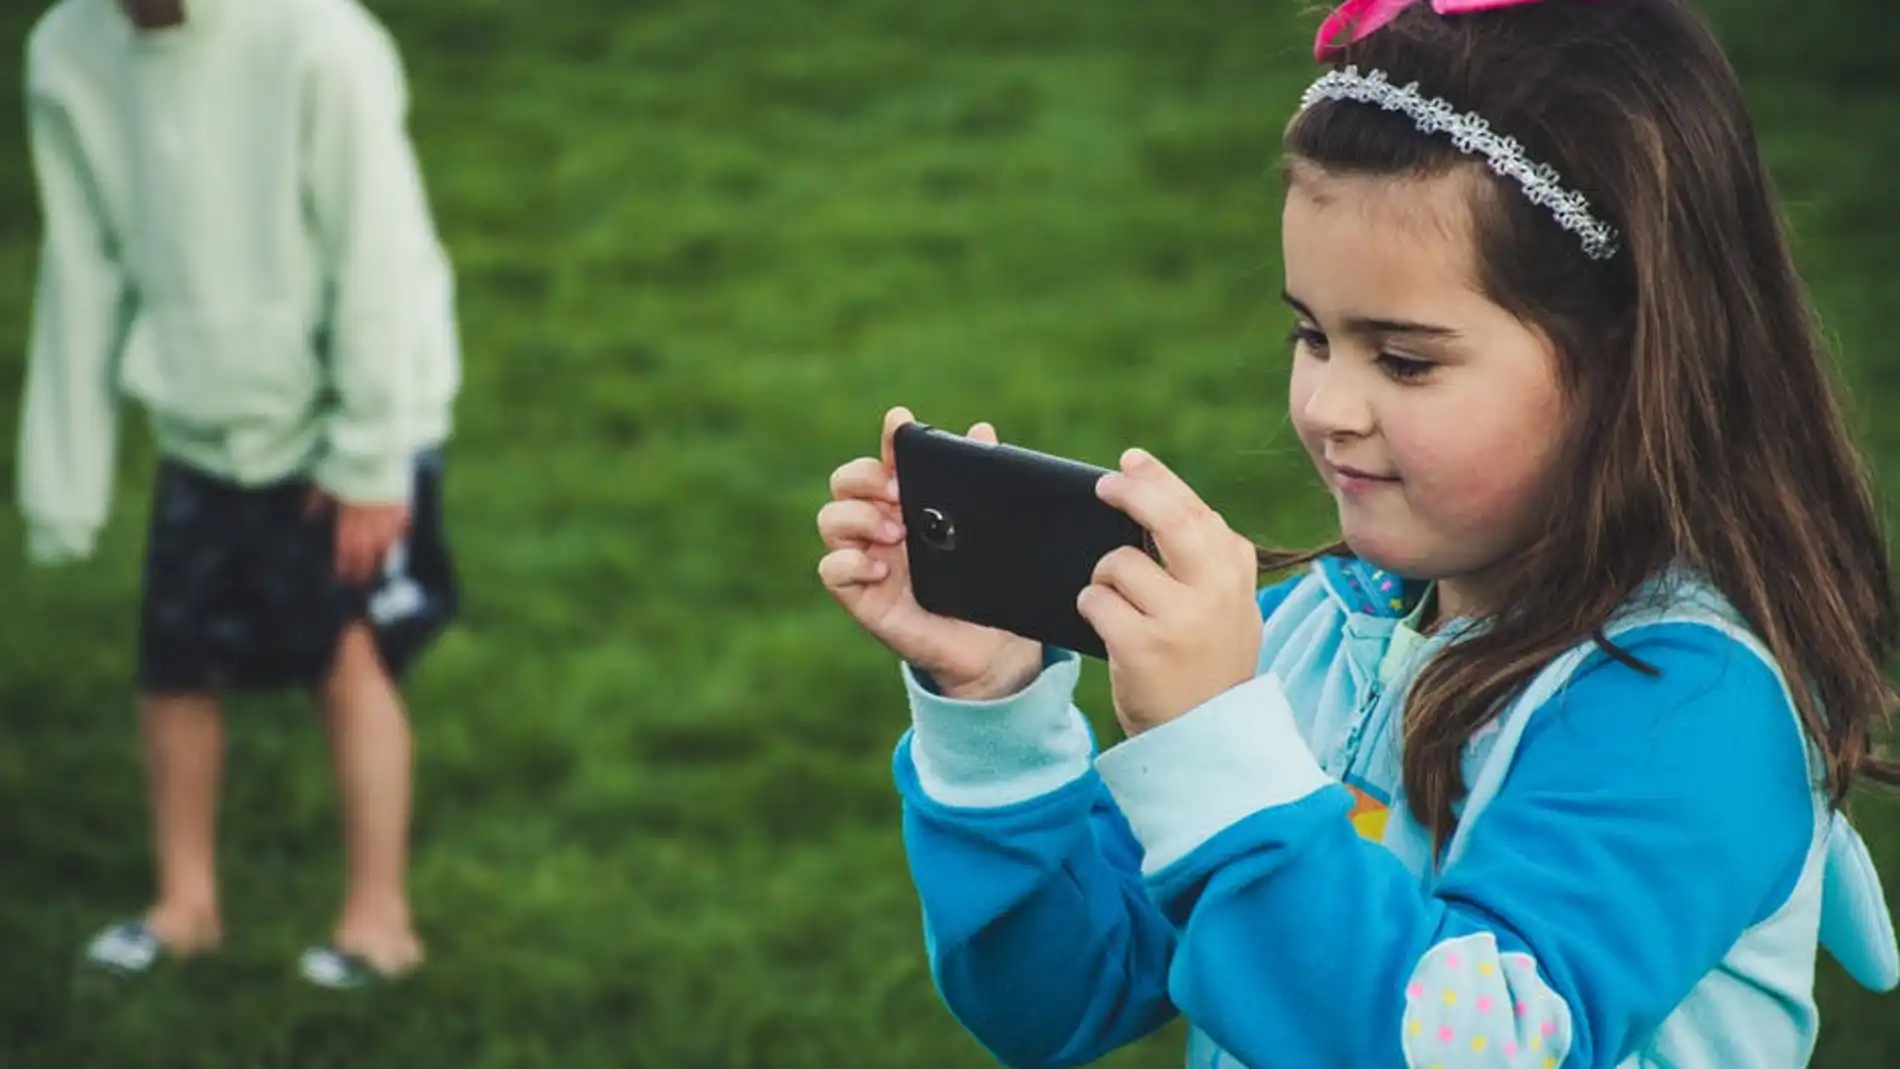 Más de dos horas con los dispositivos móviles afecta a las habilidades cognitivas de los niños